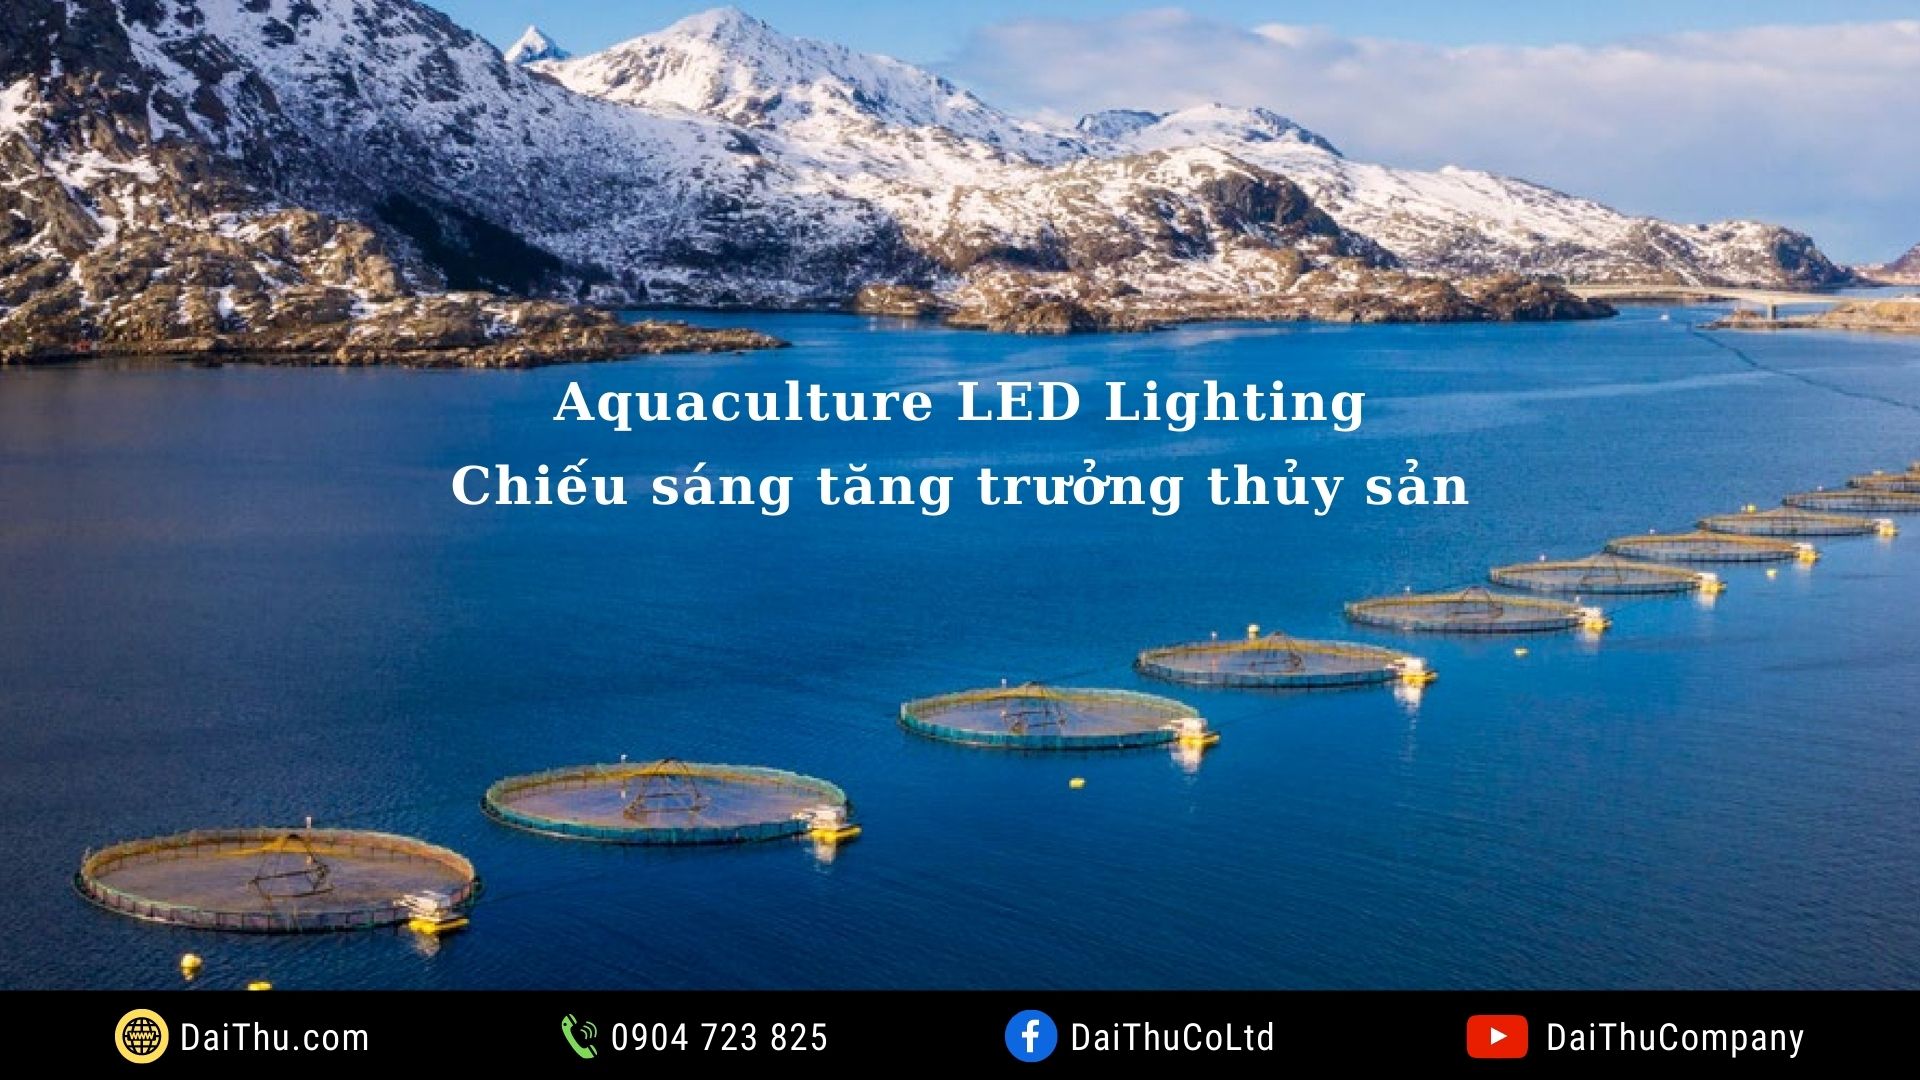 Aquaculture LED Lighting - Đèn thủy sản - Đèn hải sản - Chiếu sáng tăng trưởng thủy sản - Pacific Led Philips - Fish Lights Philips - Agri Led Lighting - Led Grow Light